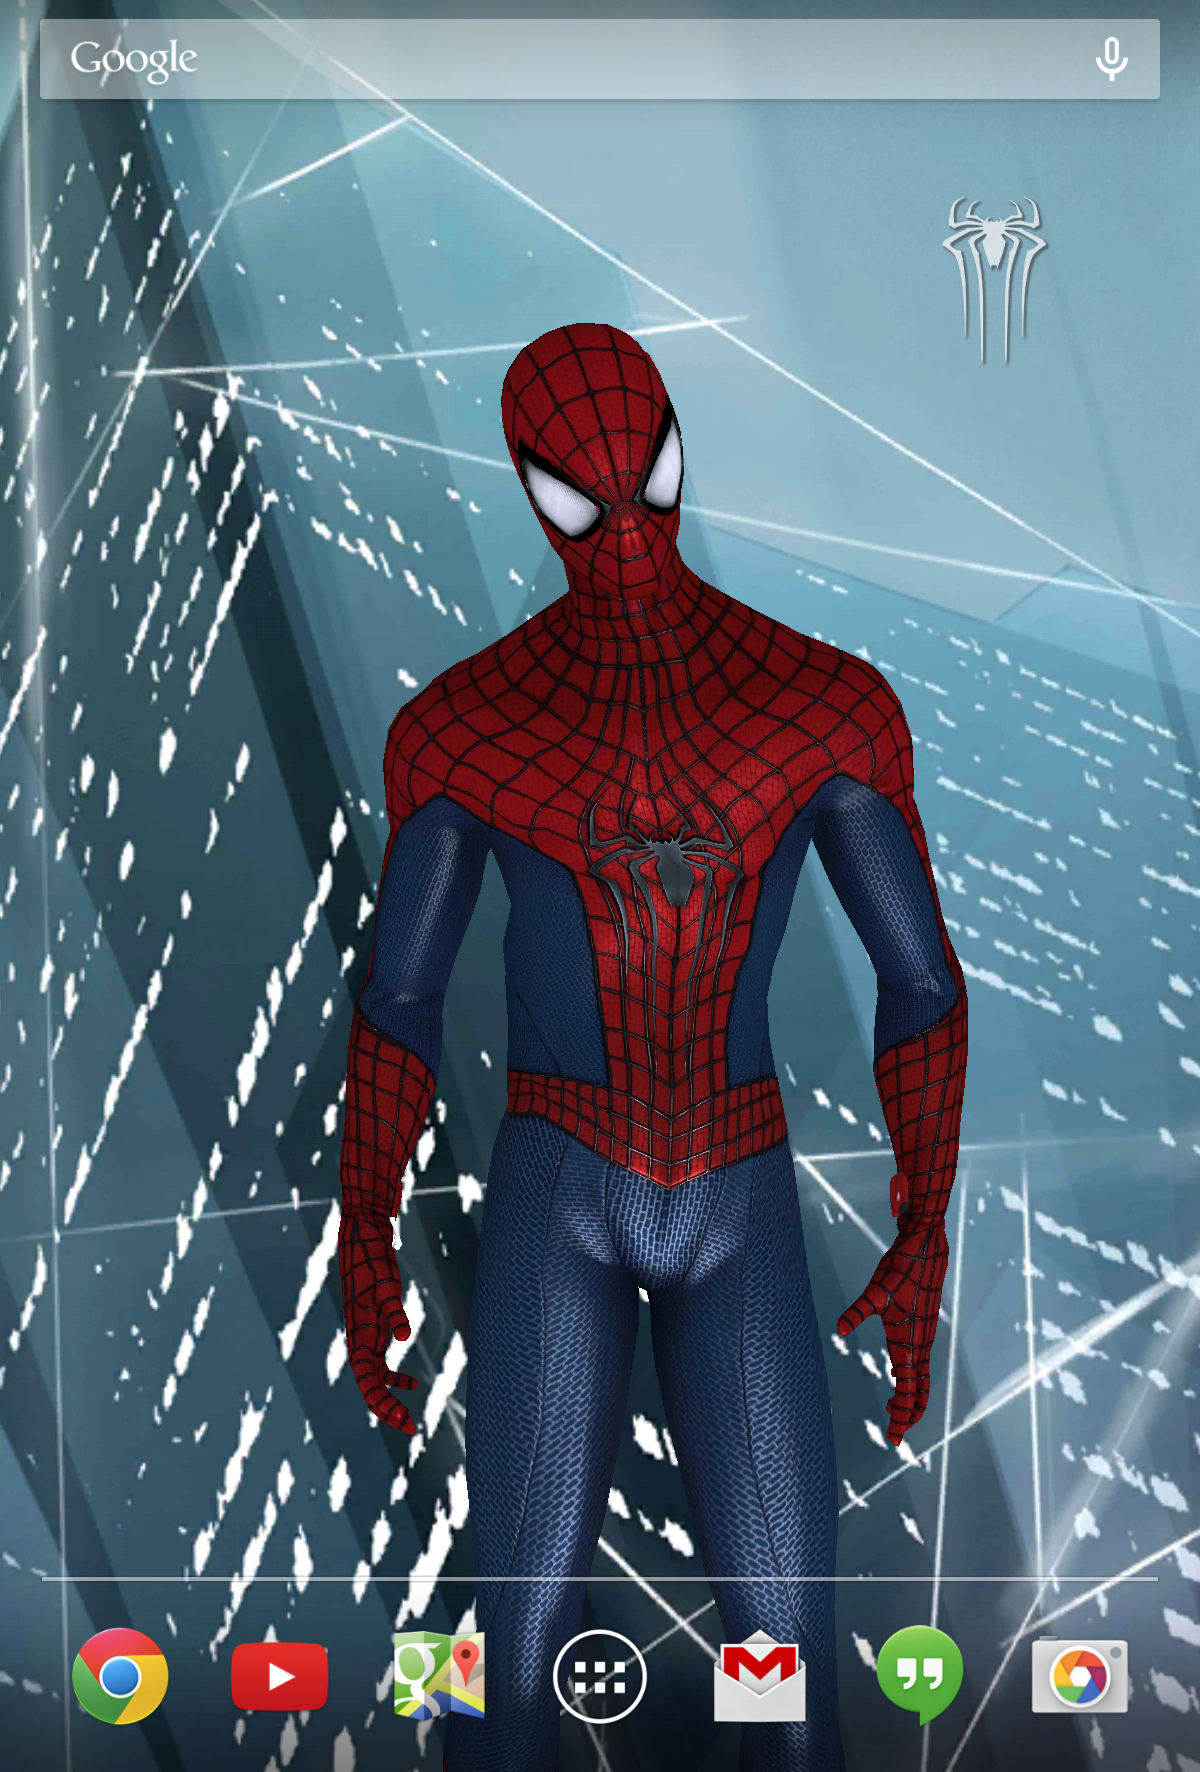 Бесплатный человек паук на android. The amazing Spider-man 2 (новый человек — паук 2). Амазинг спидер ман 2 андроид. The amazing Spider-man 1 игра Android. The amazing Spider-man 3 игра.